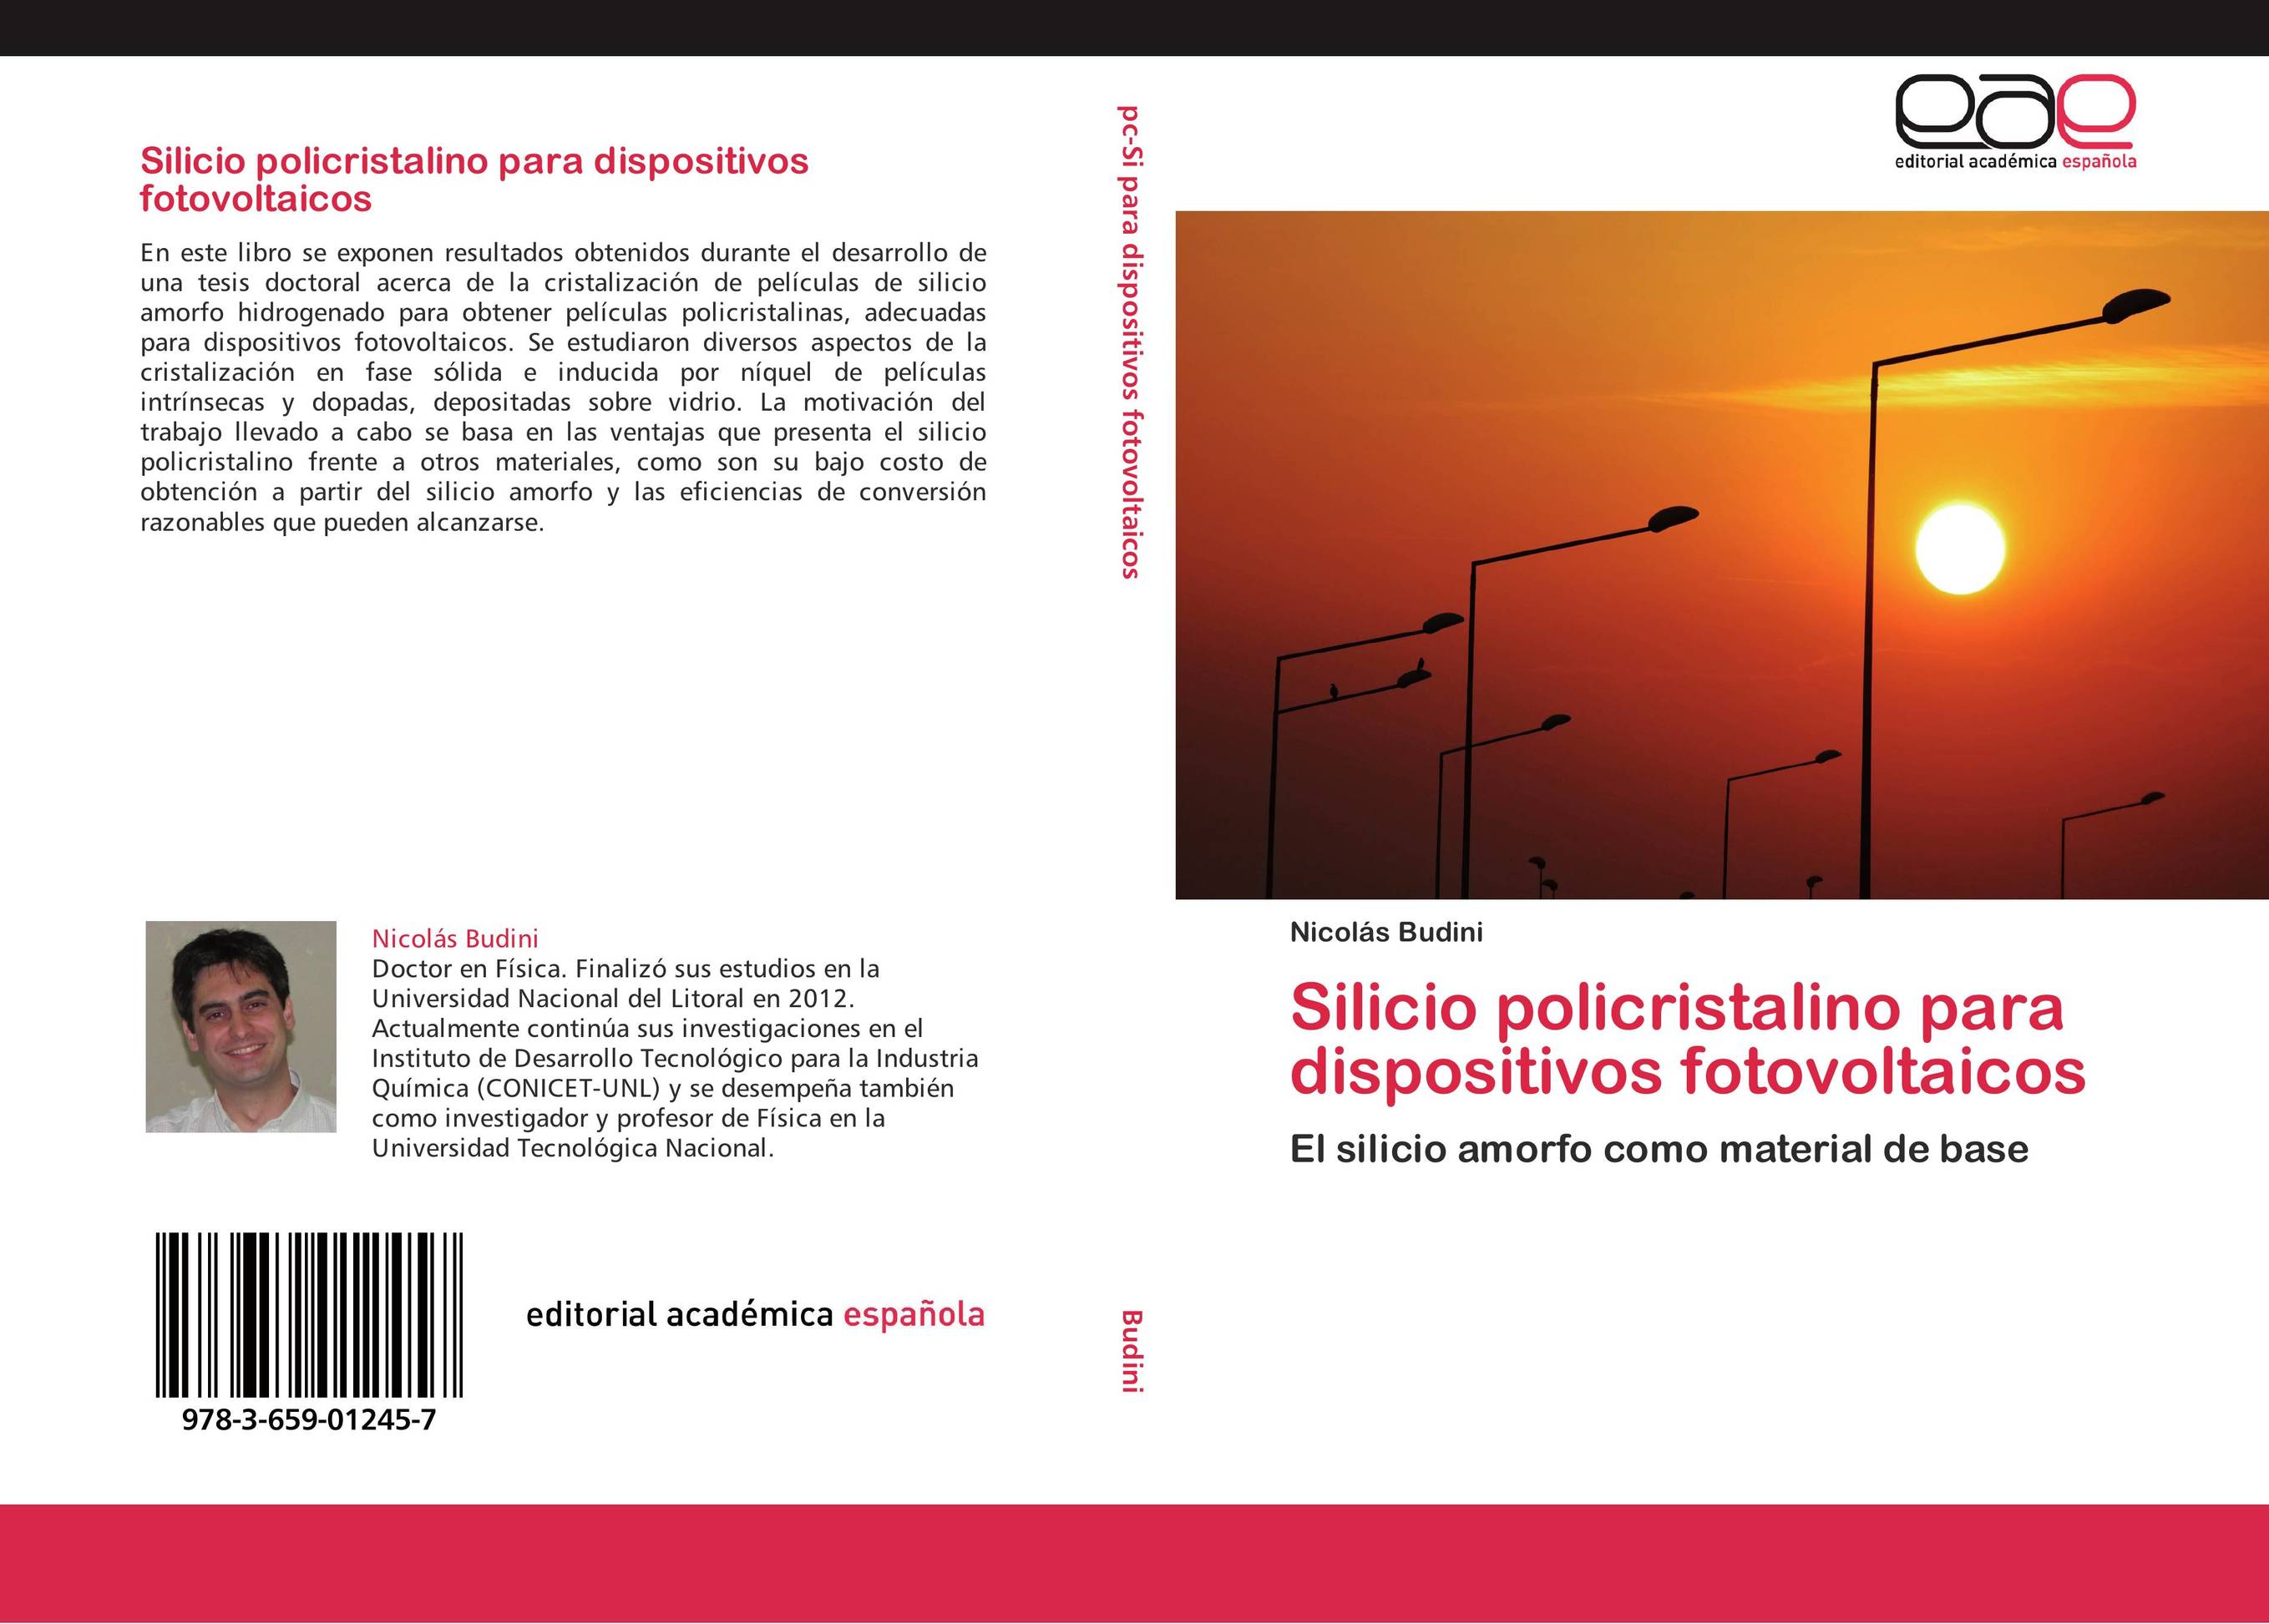 Silicio policristalino para dispositivos fotovoltaicos